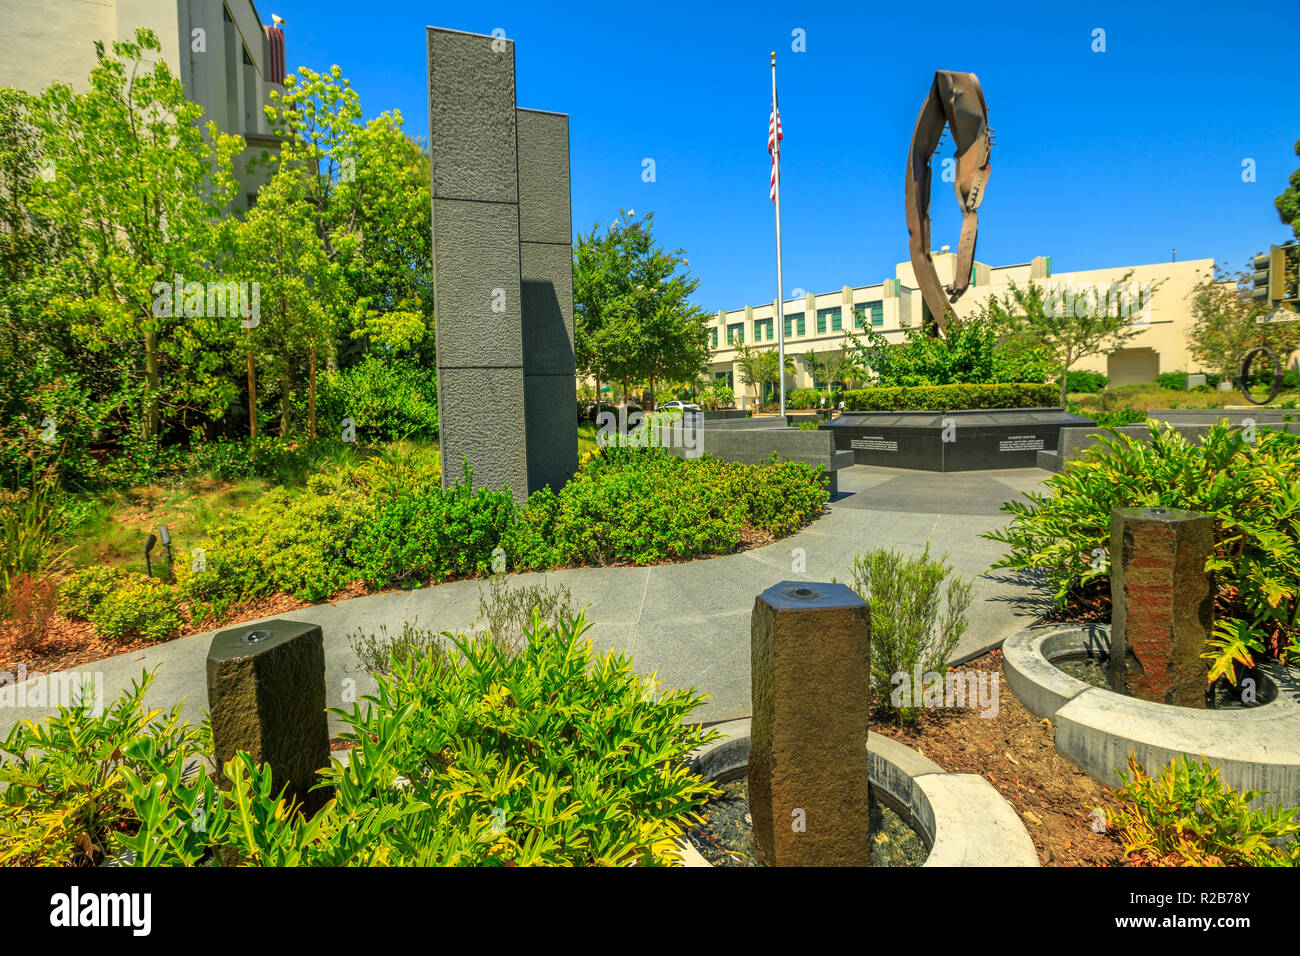 Los Angeles, California, Stati Uniti - 6 Agosto 2018: Beverly Hills 9-11 Memorial Garden è un memoriale di spazio in onore degli attacchi dell 11 settembre costruito con un relitto del World Trade Center. Foto Stock